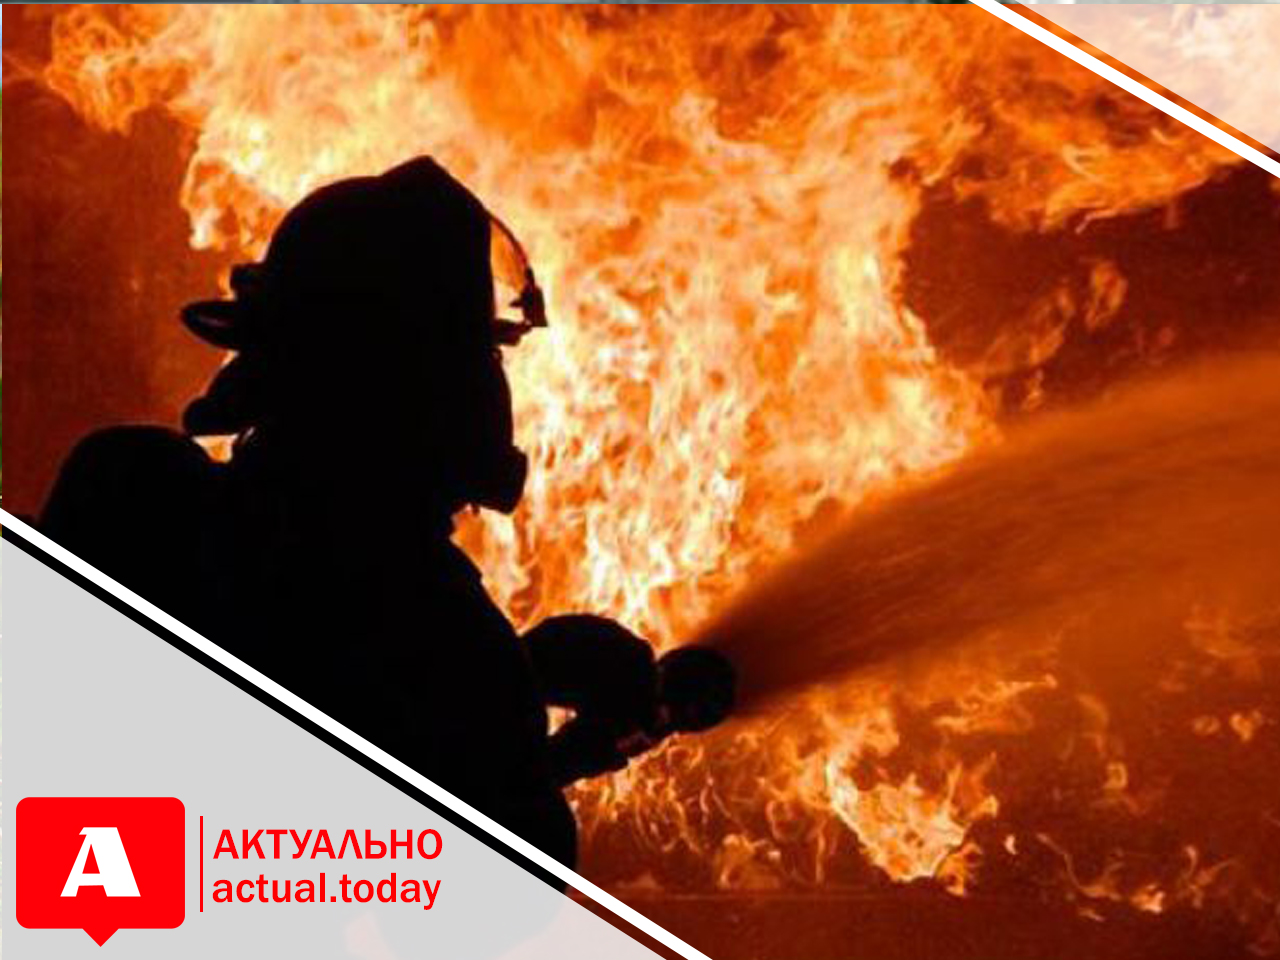 У Запоріжжі сталася пожежа у корпусі національного університету (ФОТО)